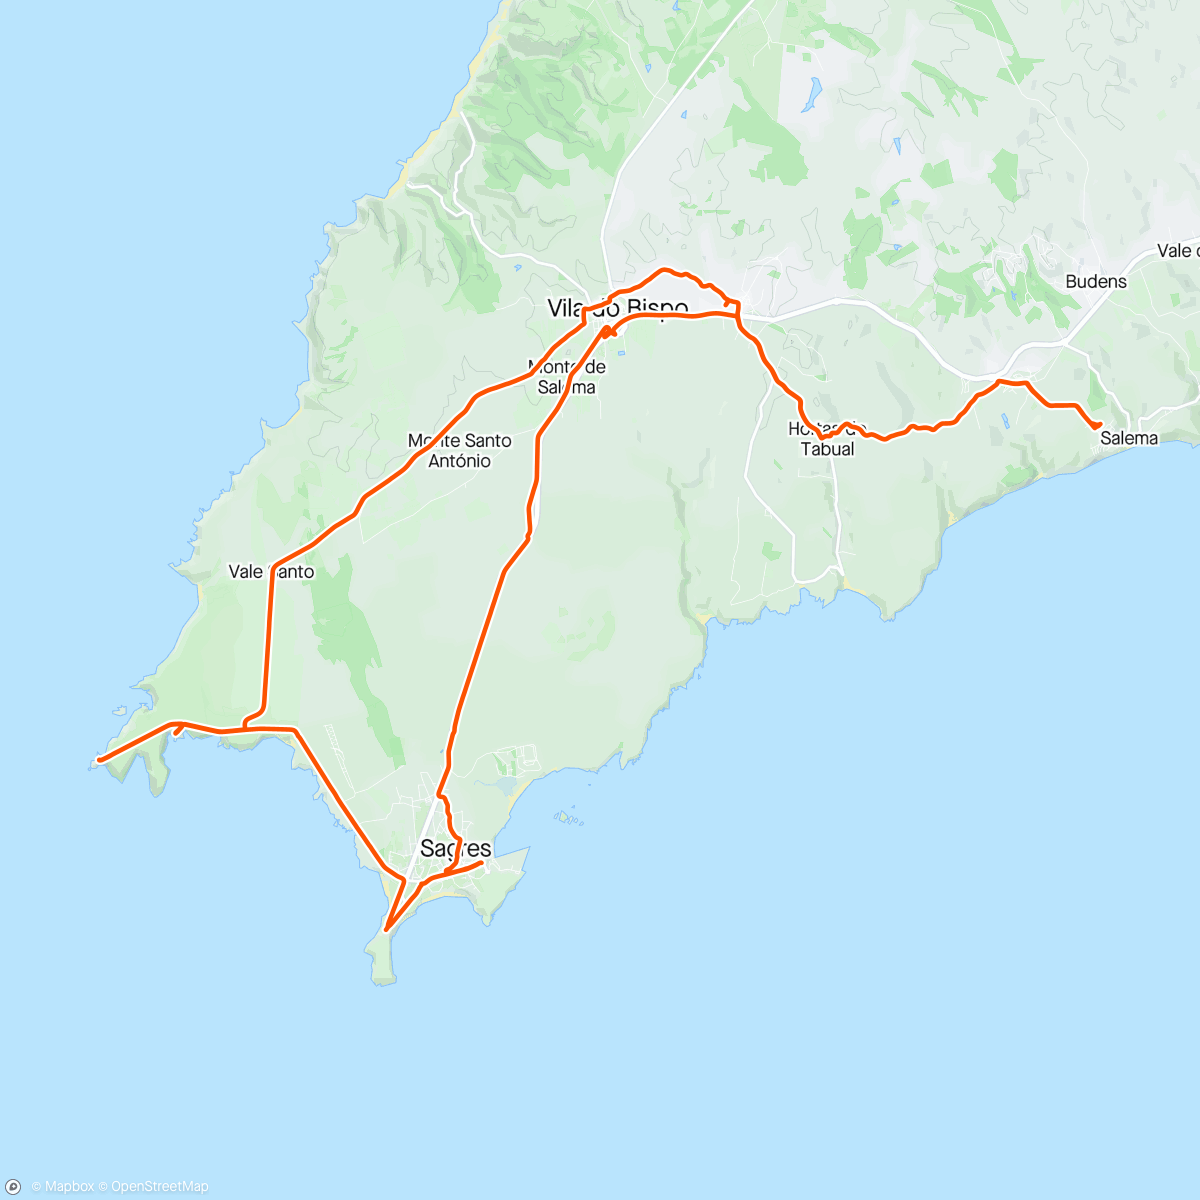 Mappa dell'attività Salema, Sao Vicente and Sagres loop